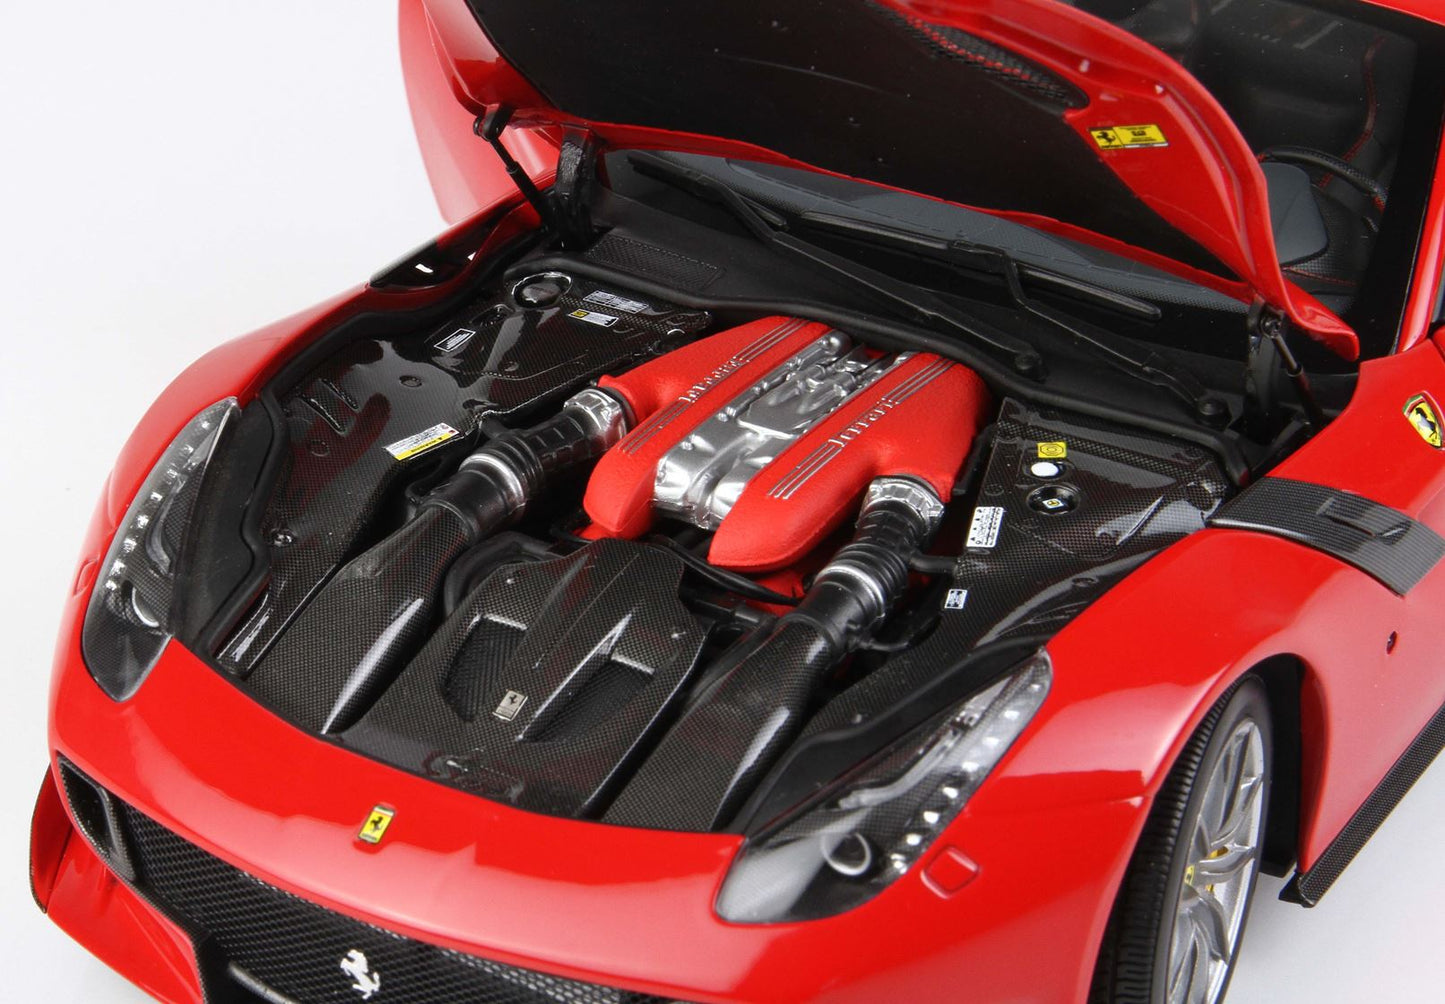 BBR 1/18 Ferrari F12 TDF Red Corsa 322 -Die Cast- Limited 30pcs